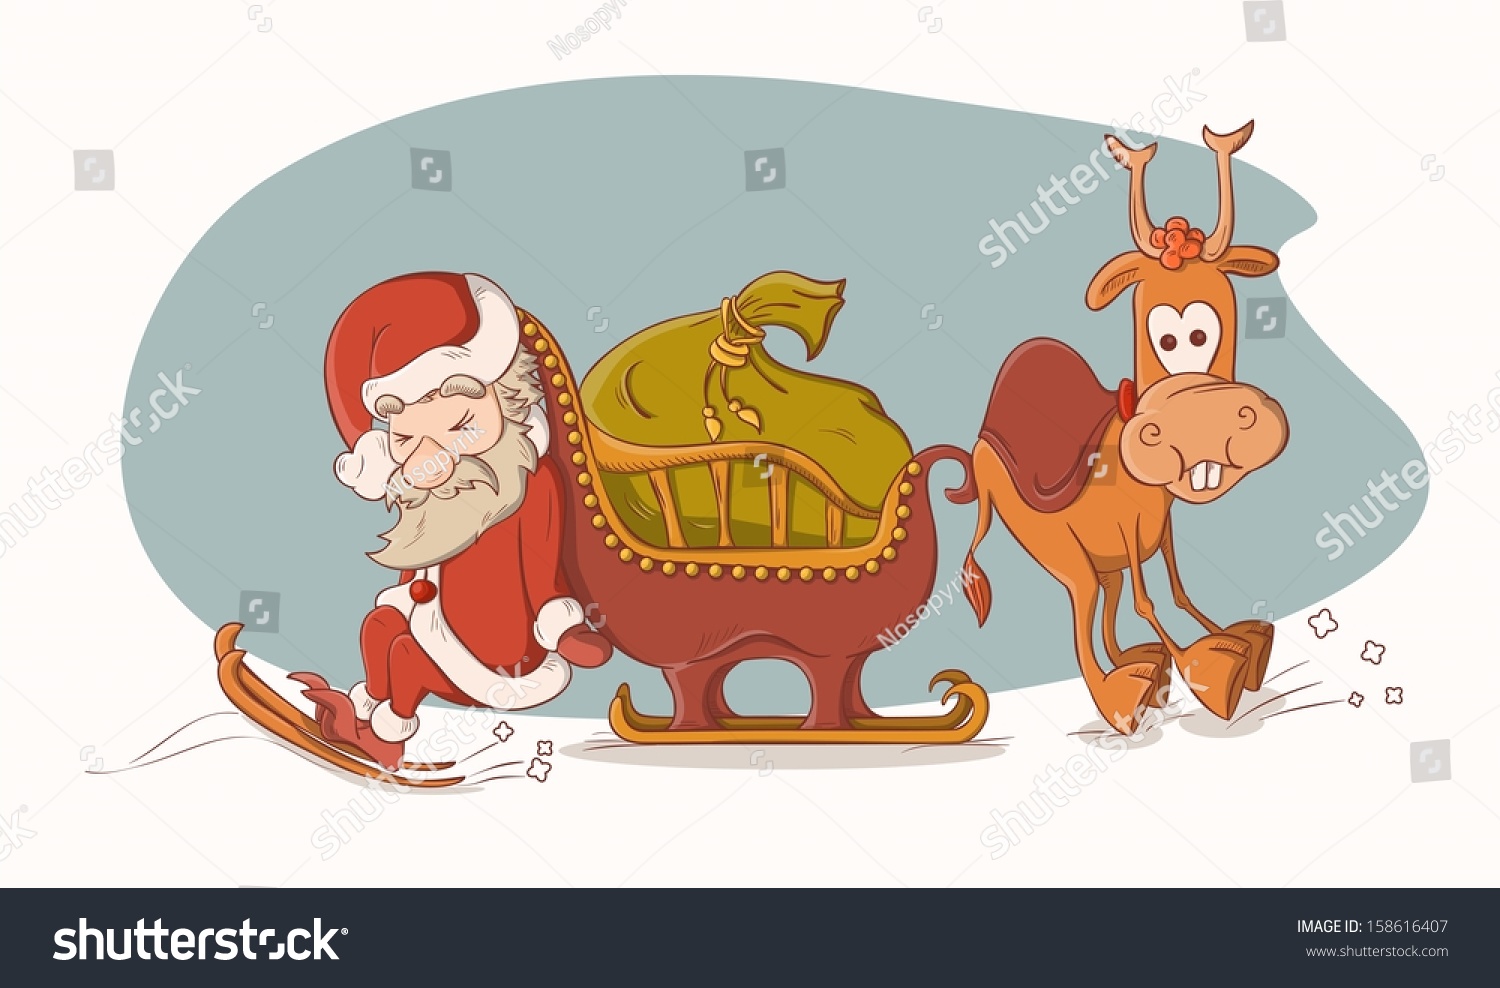 Дед Мороз в санях с оленями смешной